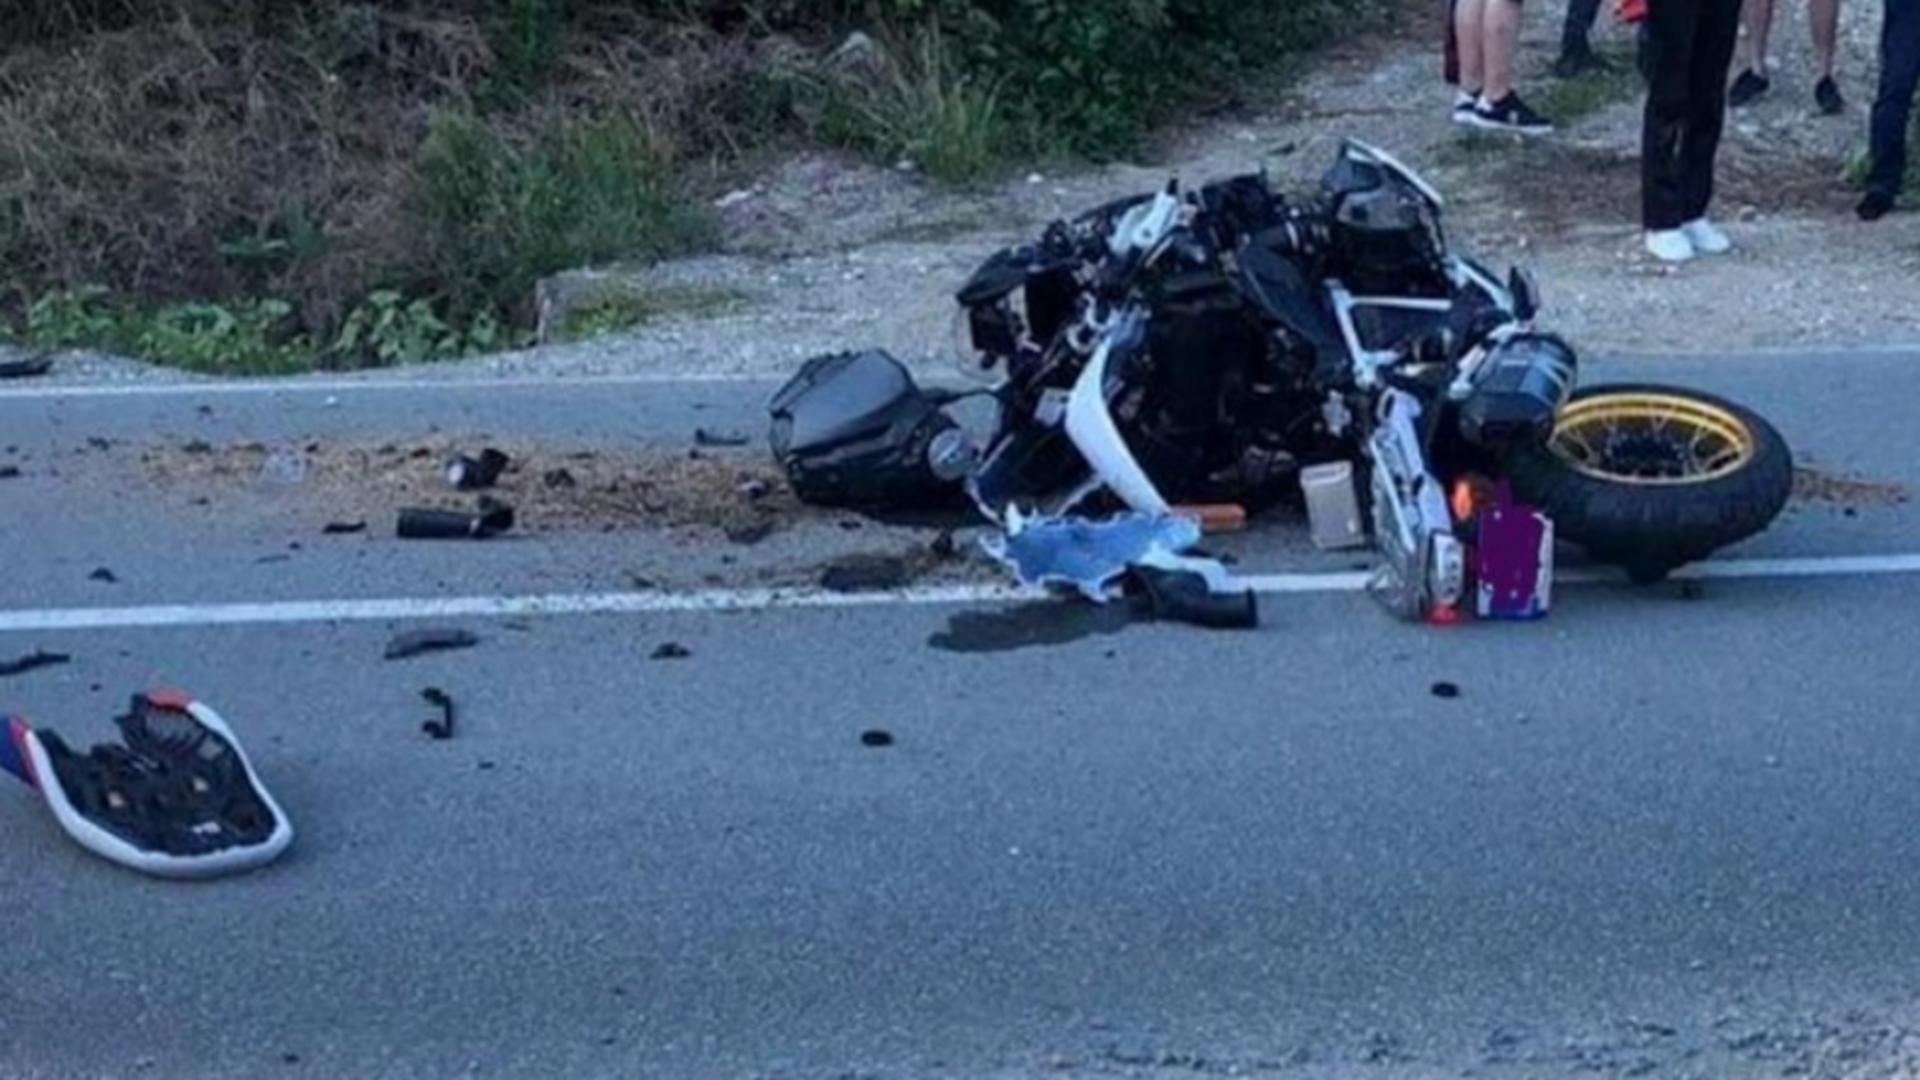 Imagini șocante de la accidentul de motocicletă din Alba